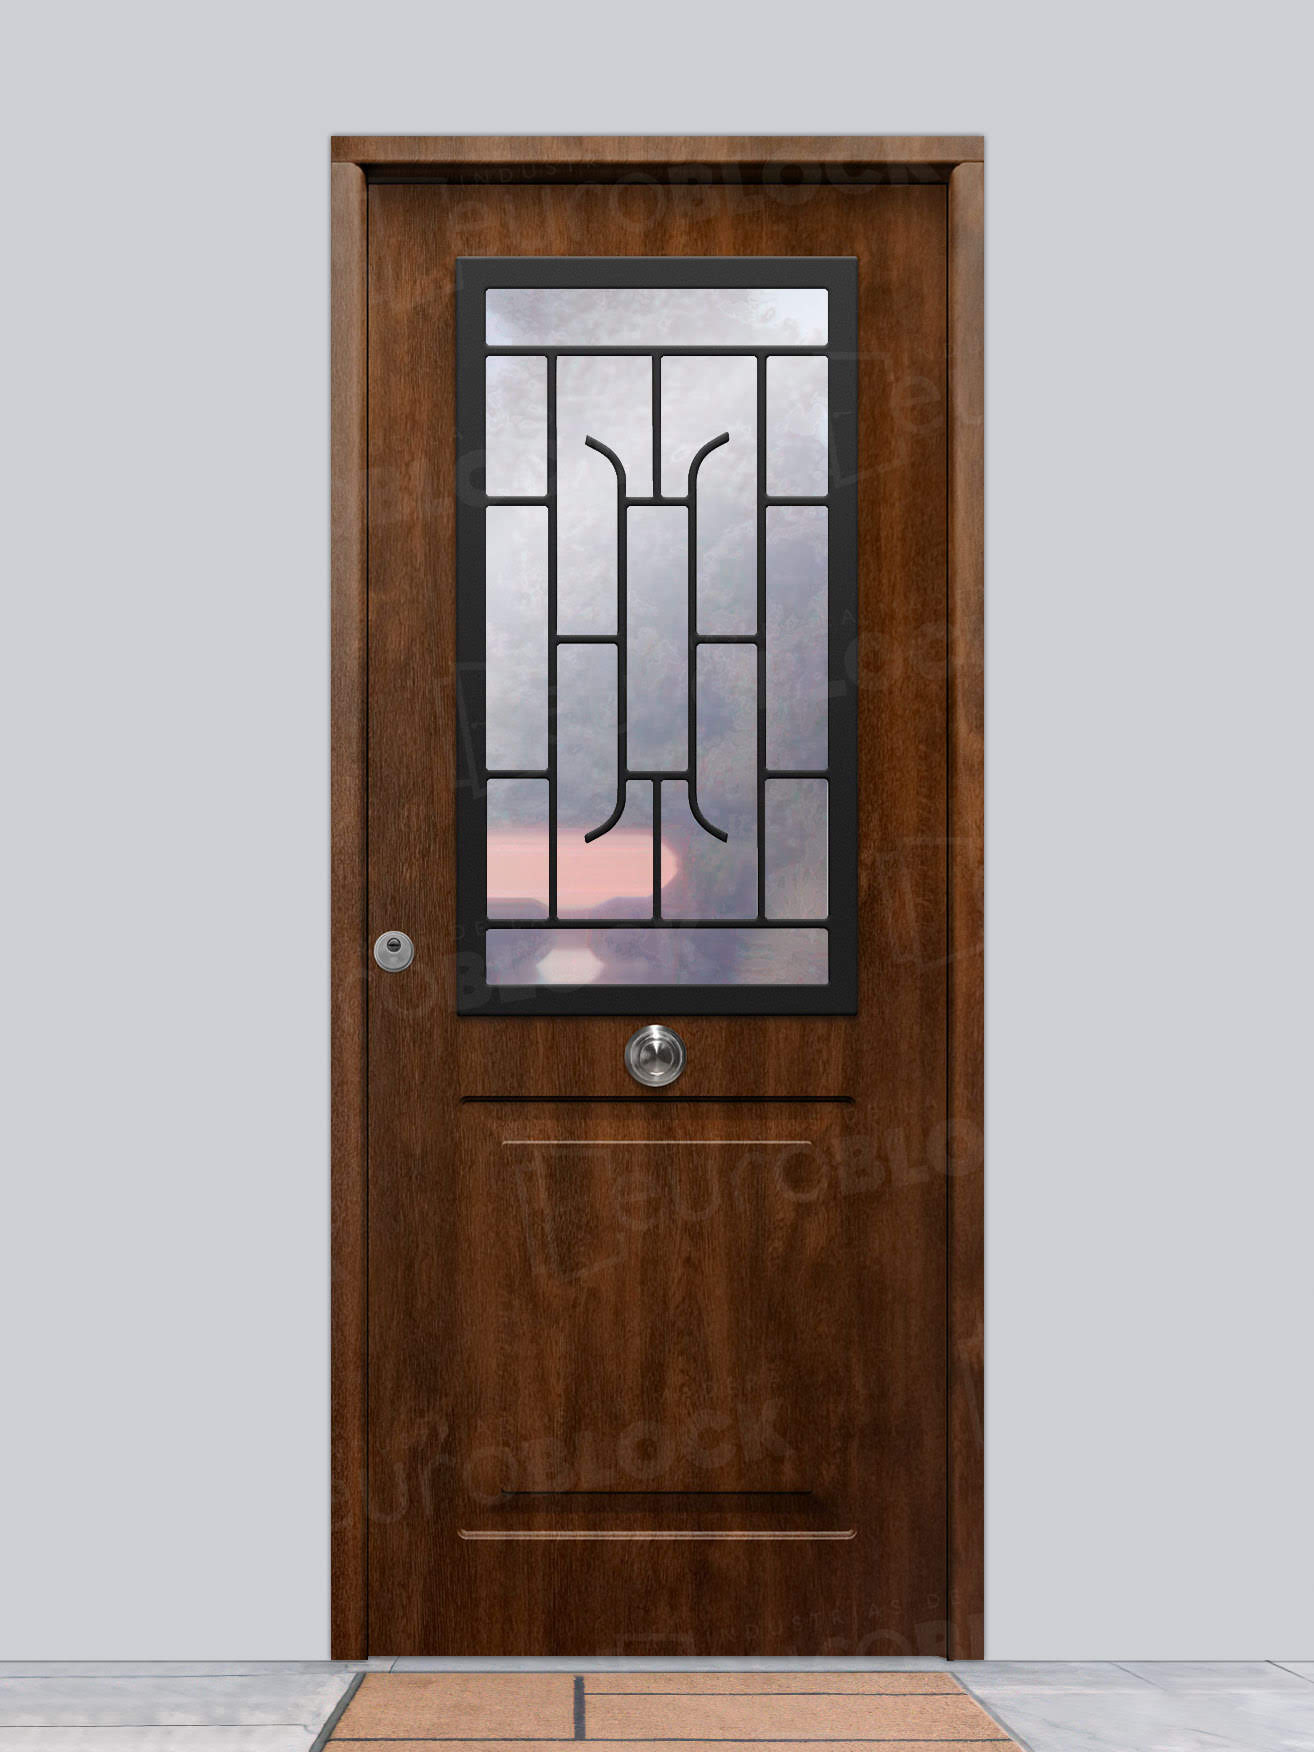 Puerta Galvanizada Metálica Clas-CR | 1110 Saga 100 Cristal Roble Viejo (Cara Interior Lisa)